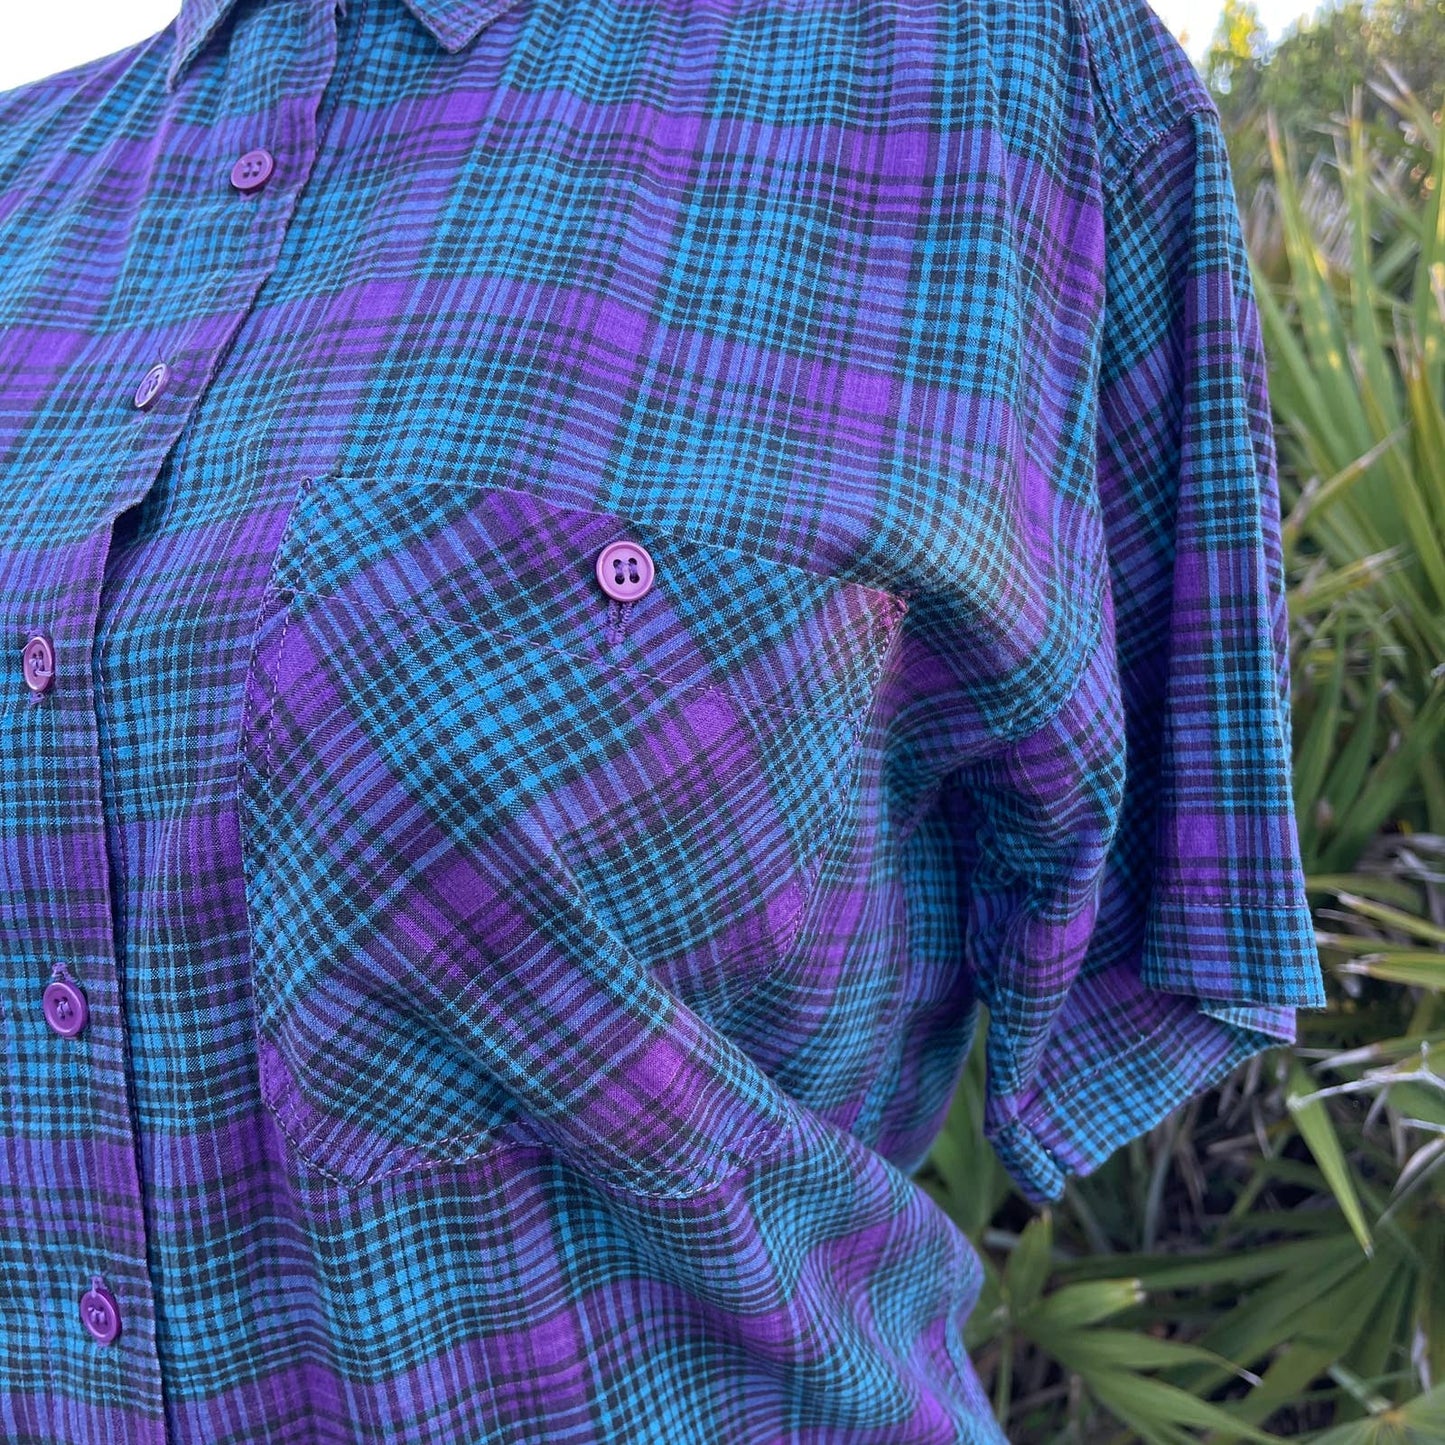 Vintage 90s Plaid Cotton Shirt Blue Purple Button Up Short Sleeve Soobee Size M